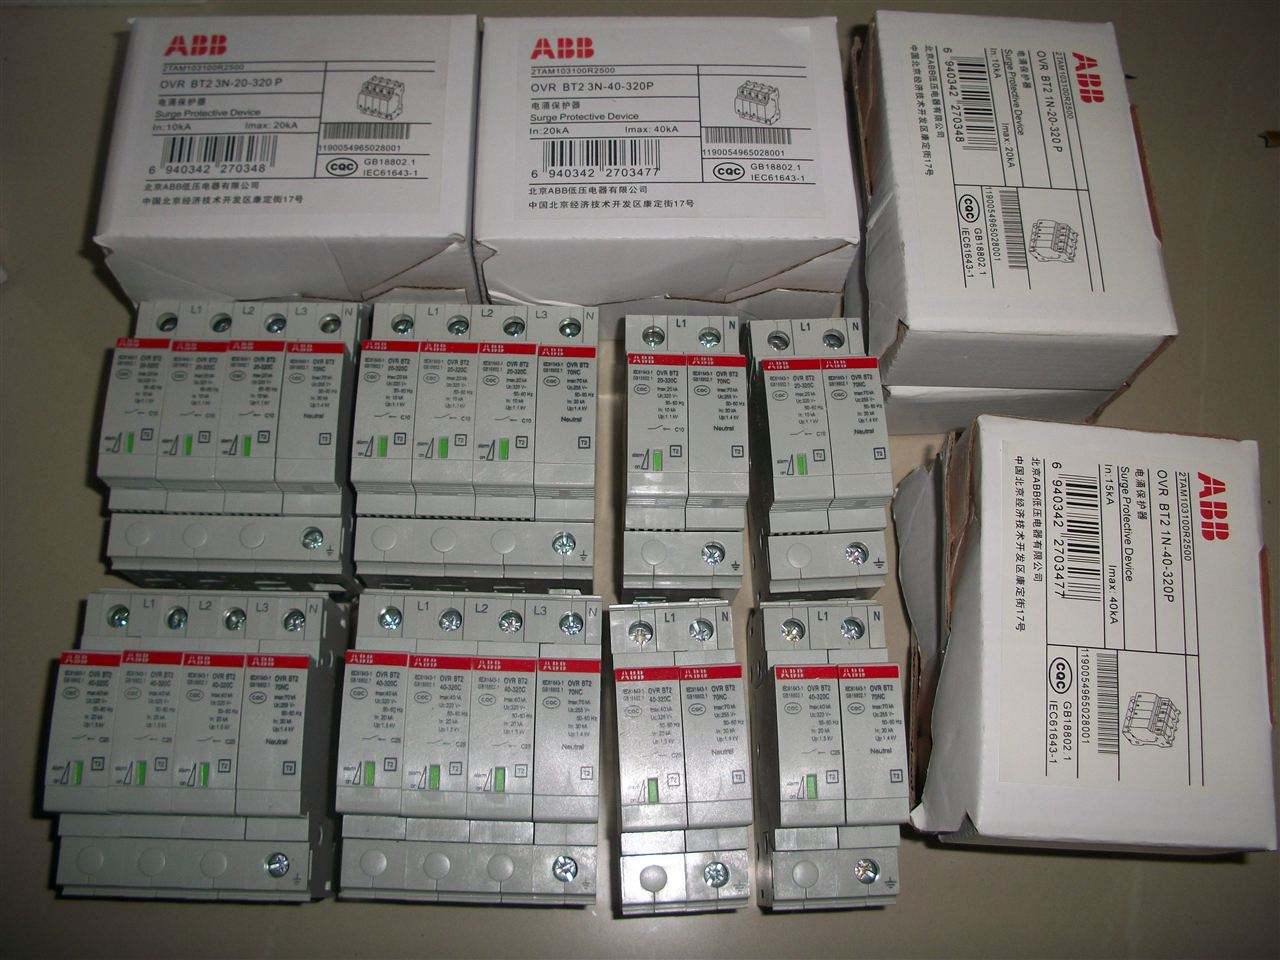 ABB电涌保护器OVR防雷器 厂家原装现货 abb,雷电保护器,防雷器,电涌保护器,OVR